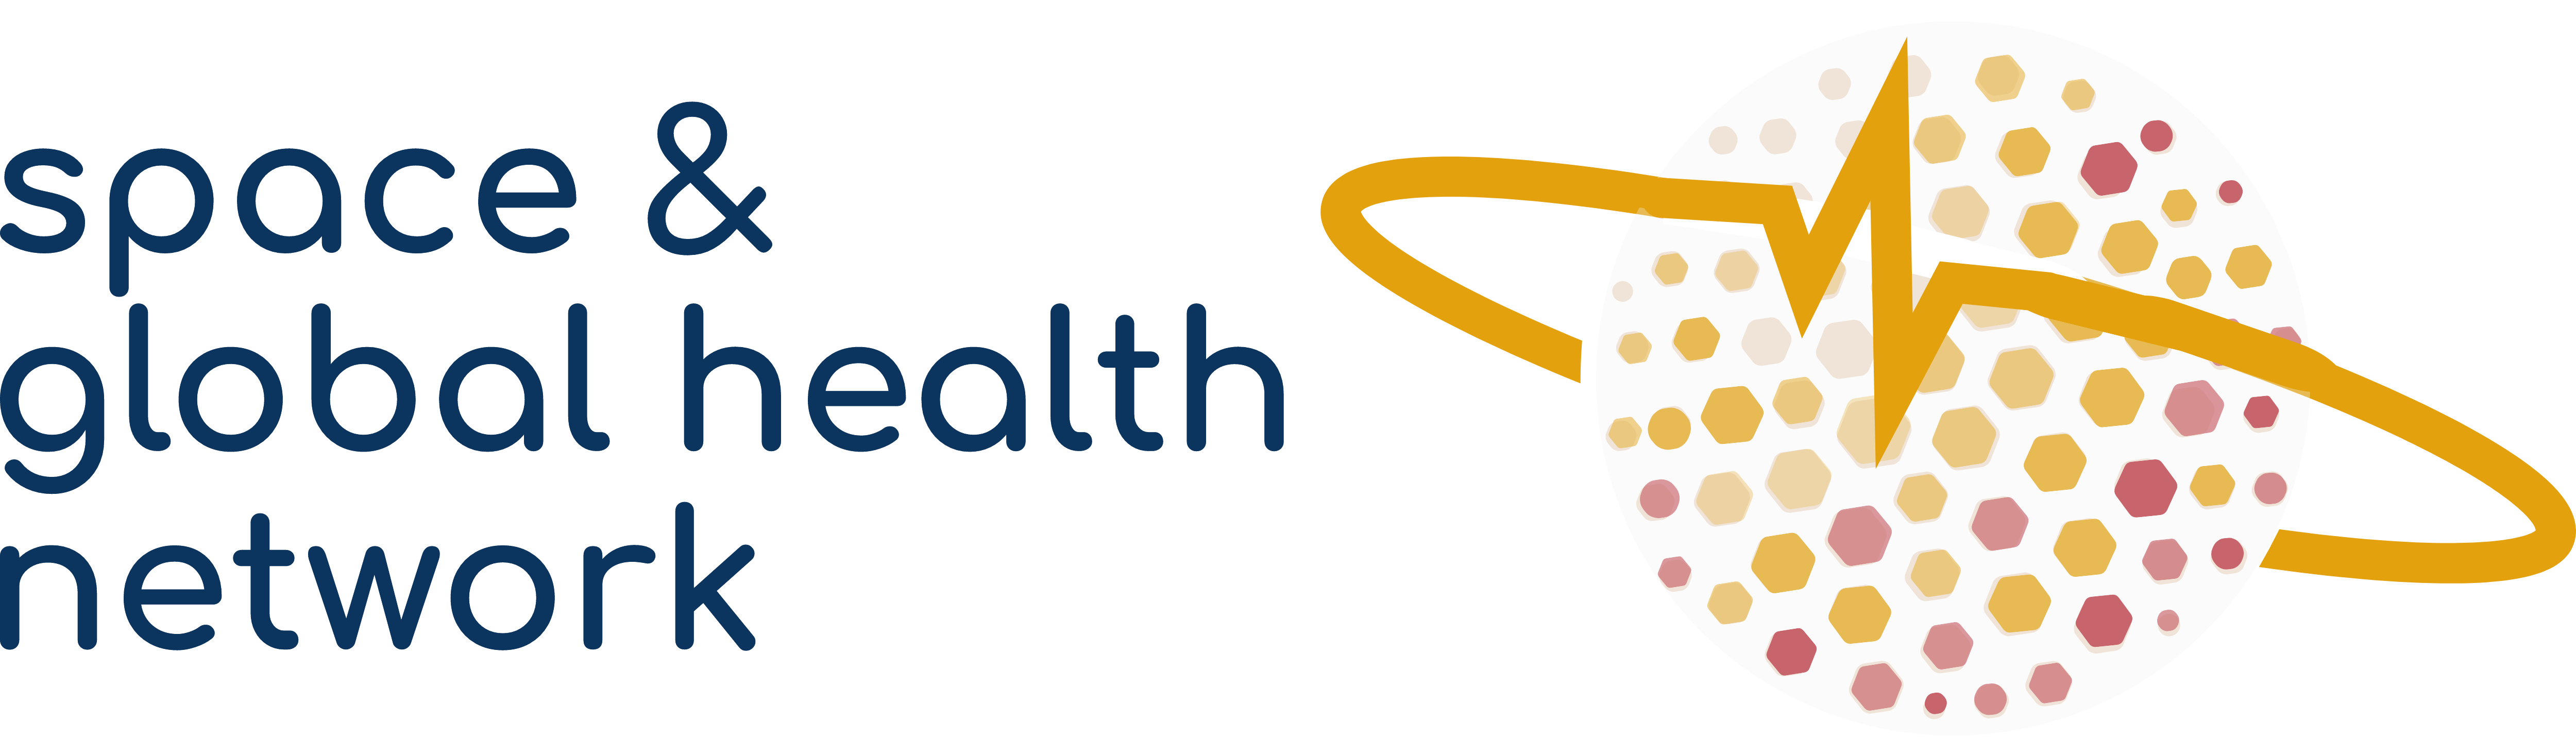 Space & Global Health Network